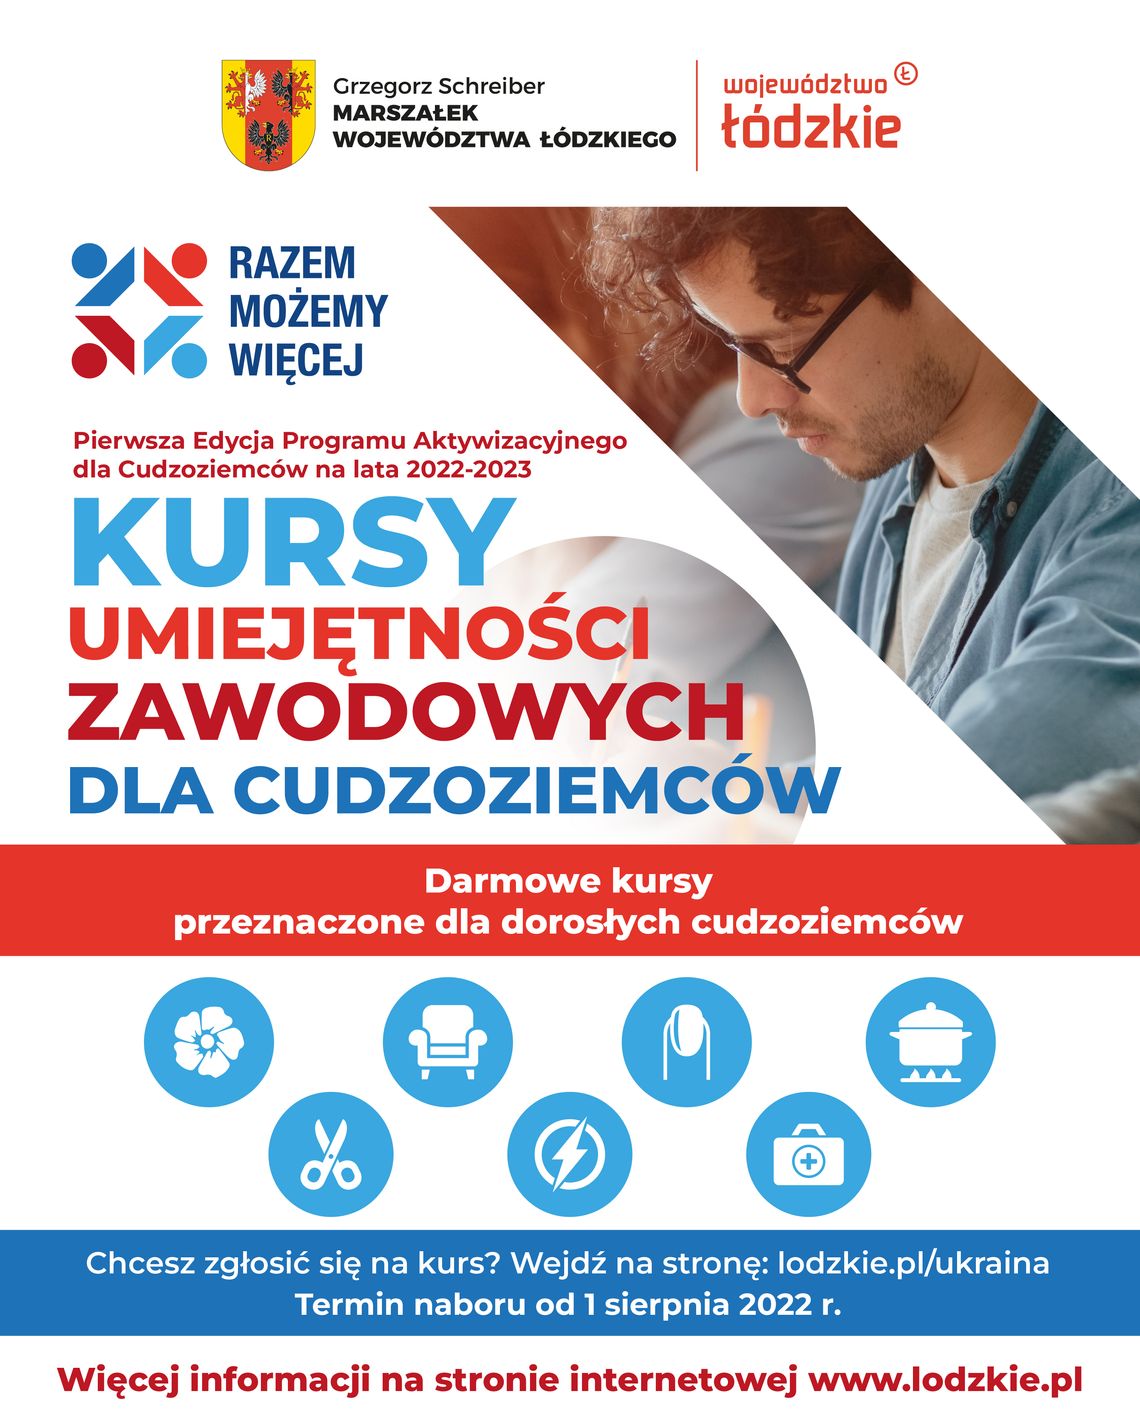 Urząd Marszałkowski w Łodzi oferuje kursy języka polskiego dla cudzoziemców oraz kursy umiejętności zawodowych